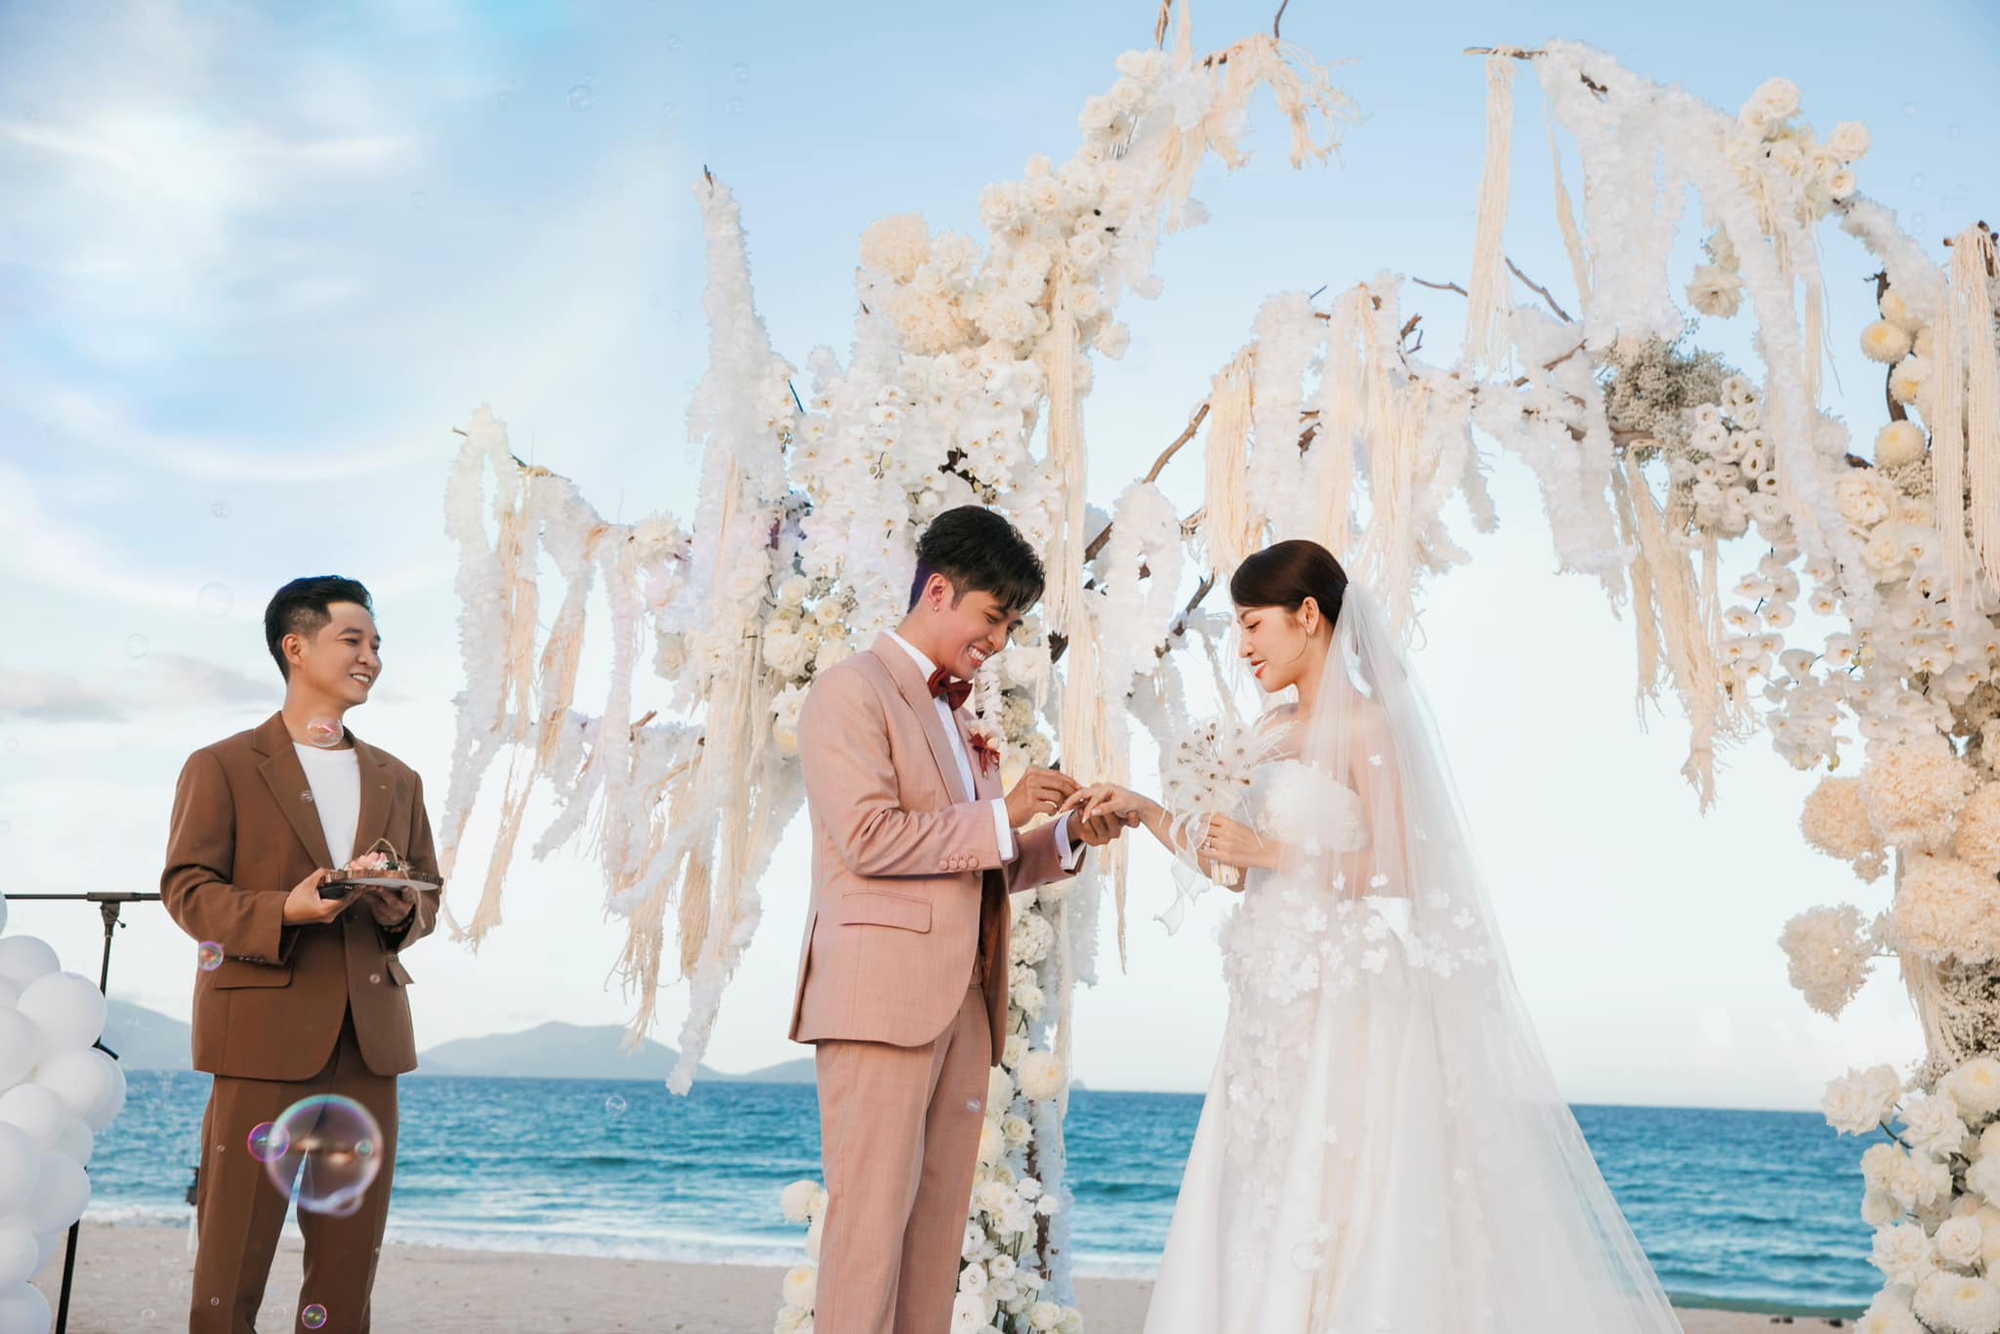 Hé lộ hình ảnh đắt giá trong đám cưới Thanh Hằng